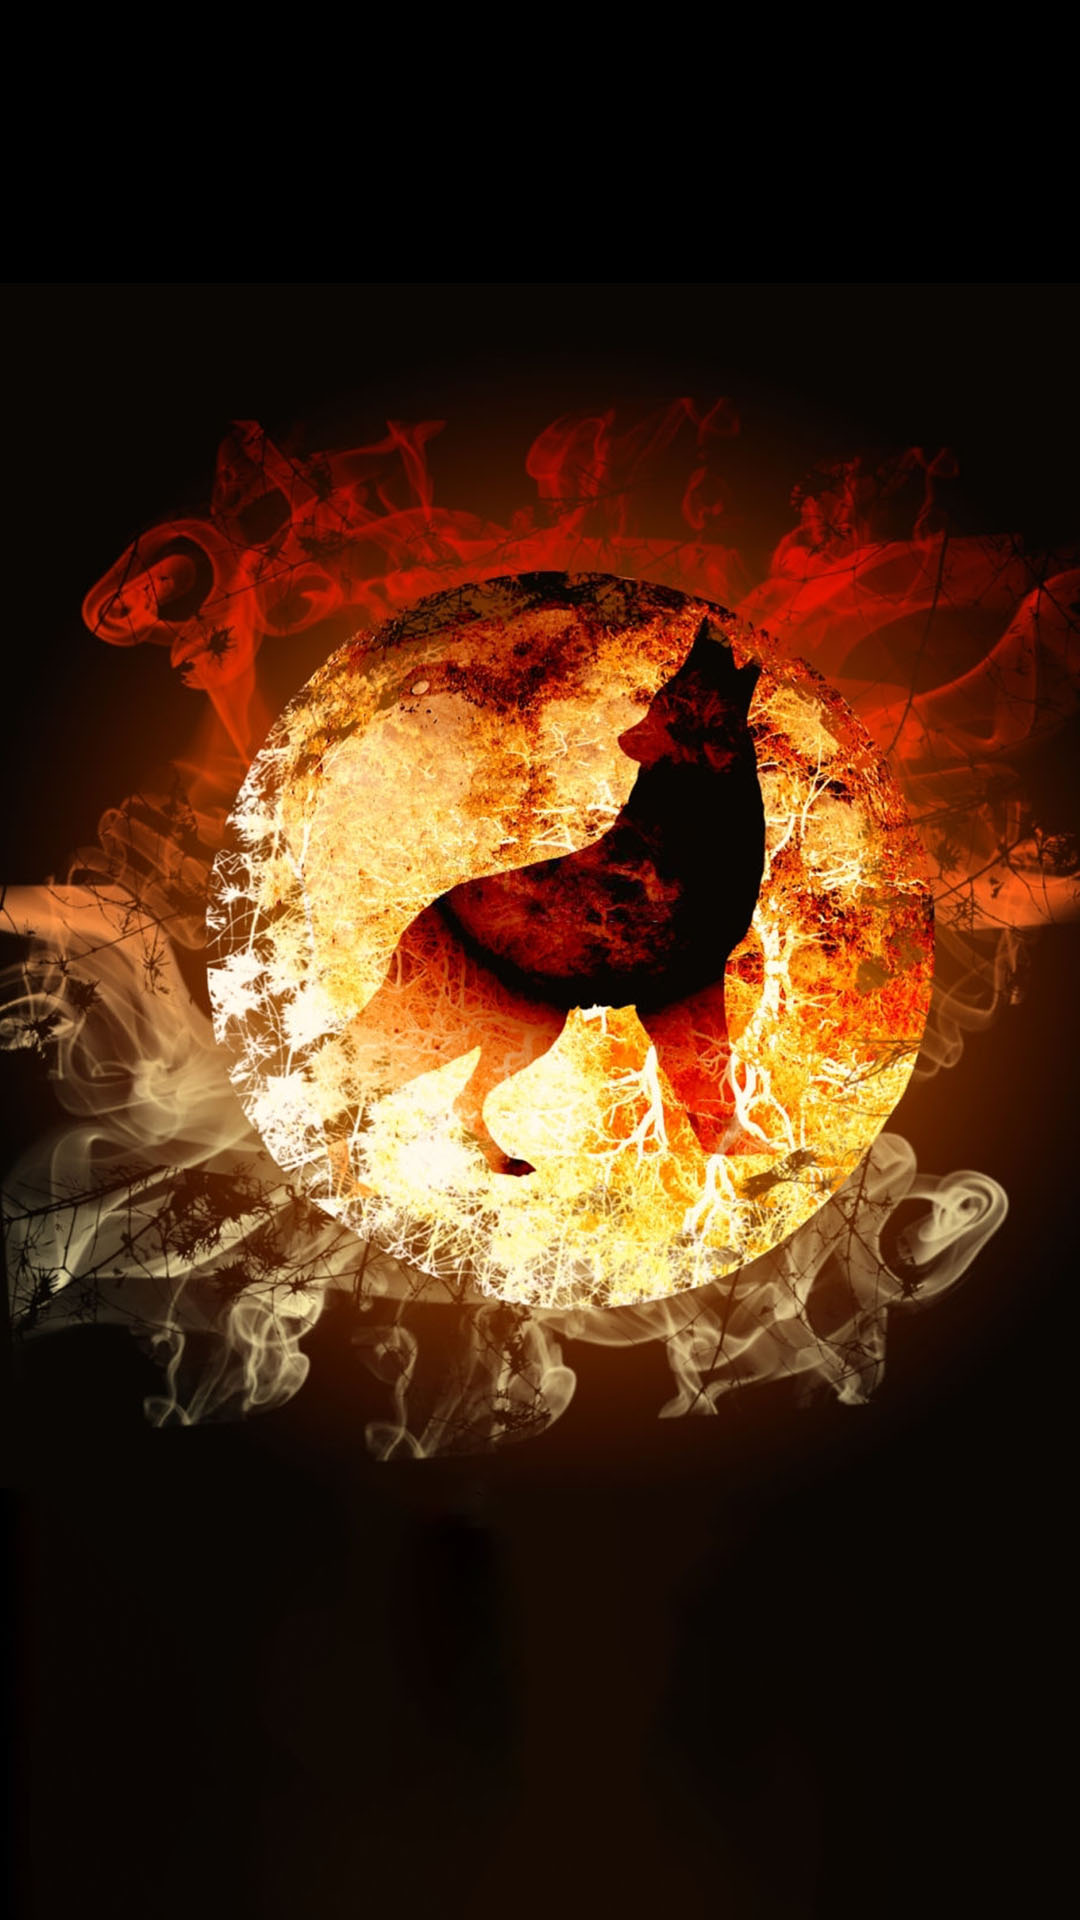 Hình ảnh con sói lửa